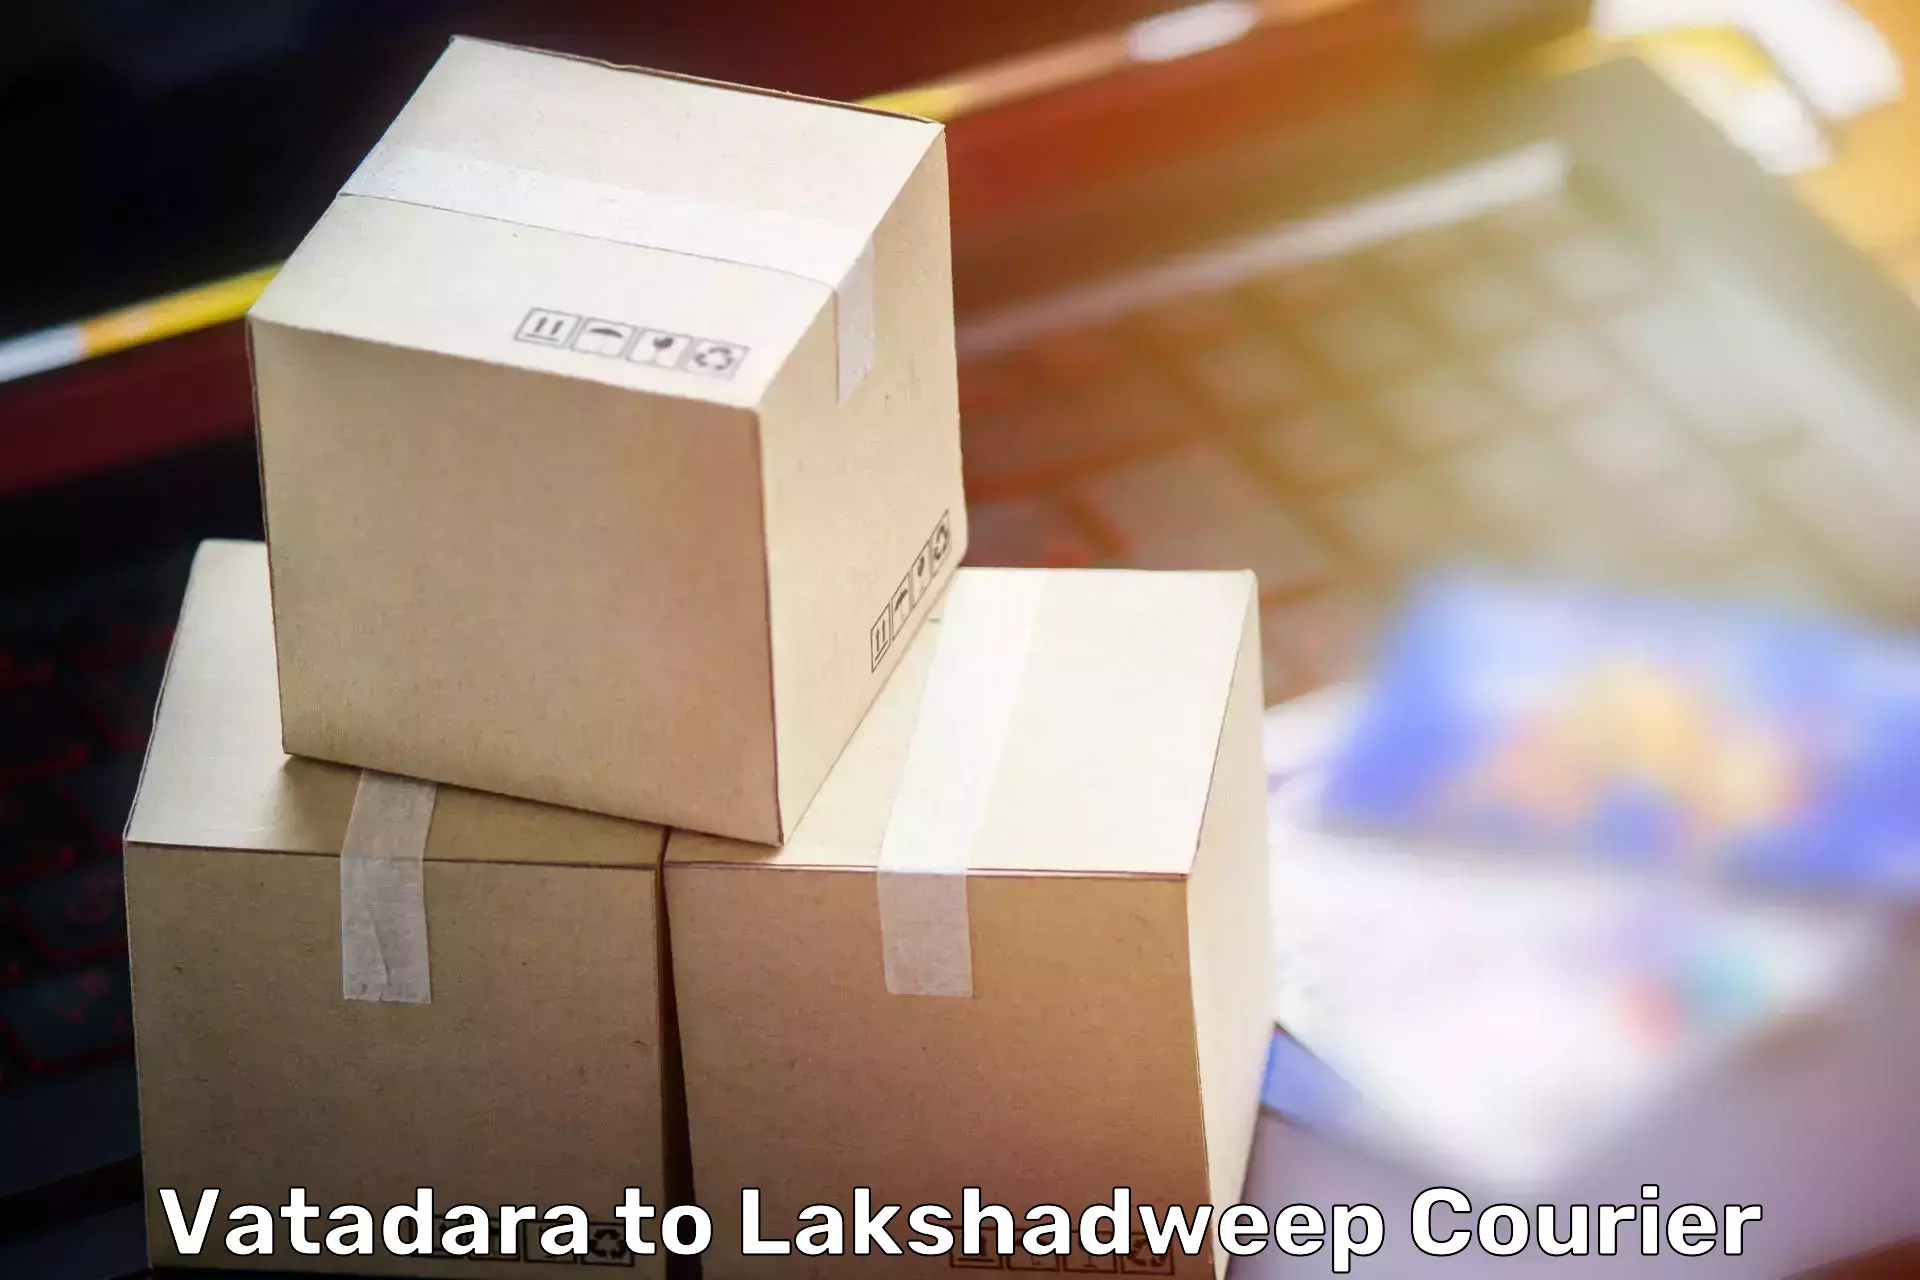 Home goods moving company Vatadara to Lakshadweep